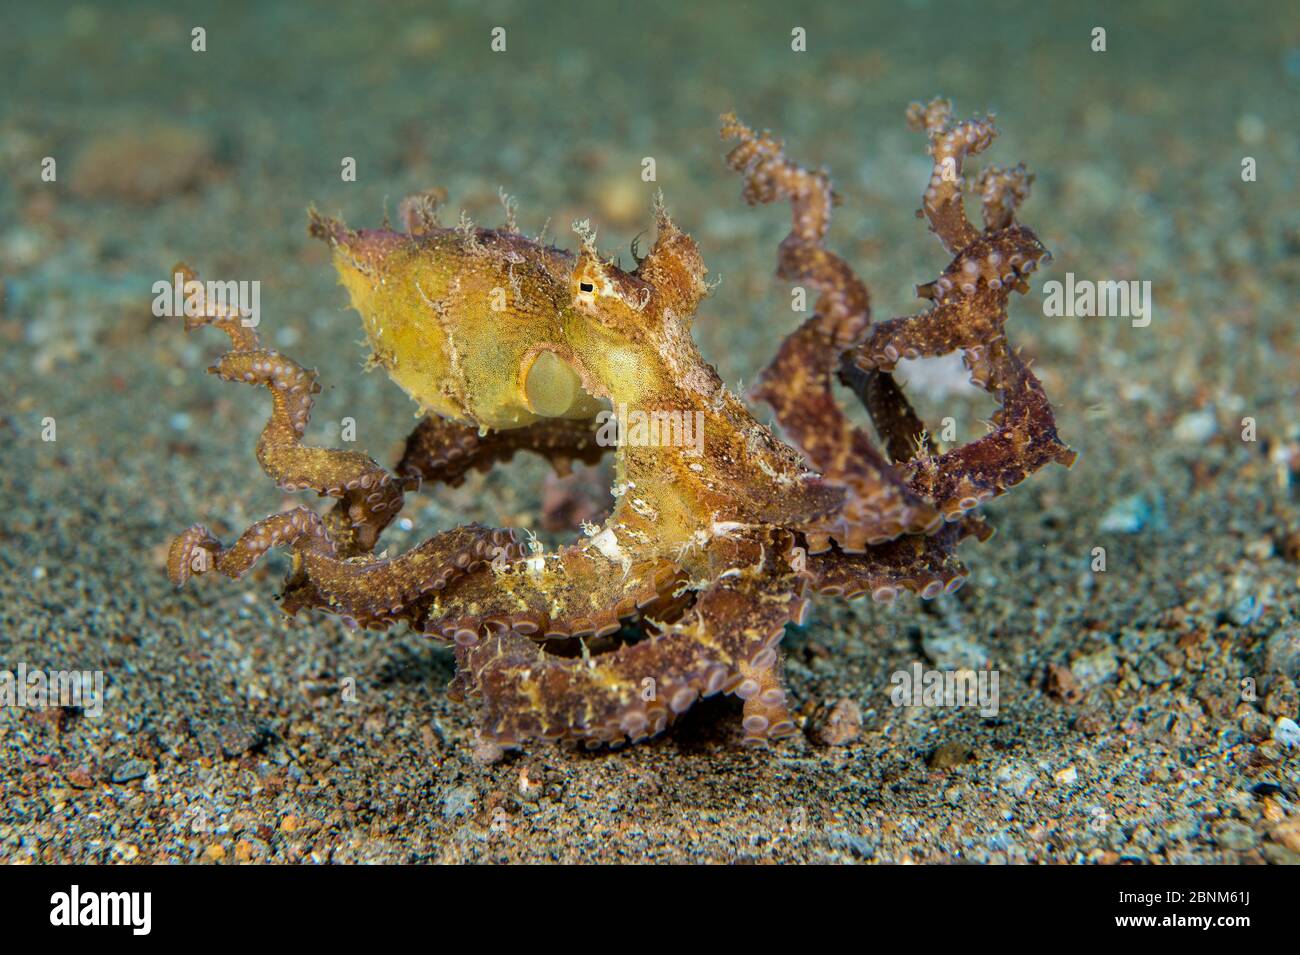 Algenkrake (Abdoopus aculeatus) bewegt sich über einen sandigen Meeresboden, Dauin, Negros Island, Philippinen. Bohol Sea, tropischer westlicher Pazifik. Stockfoto